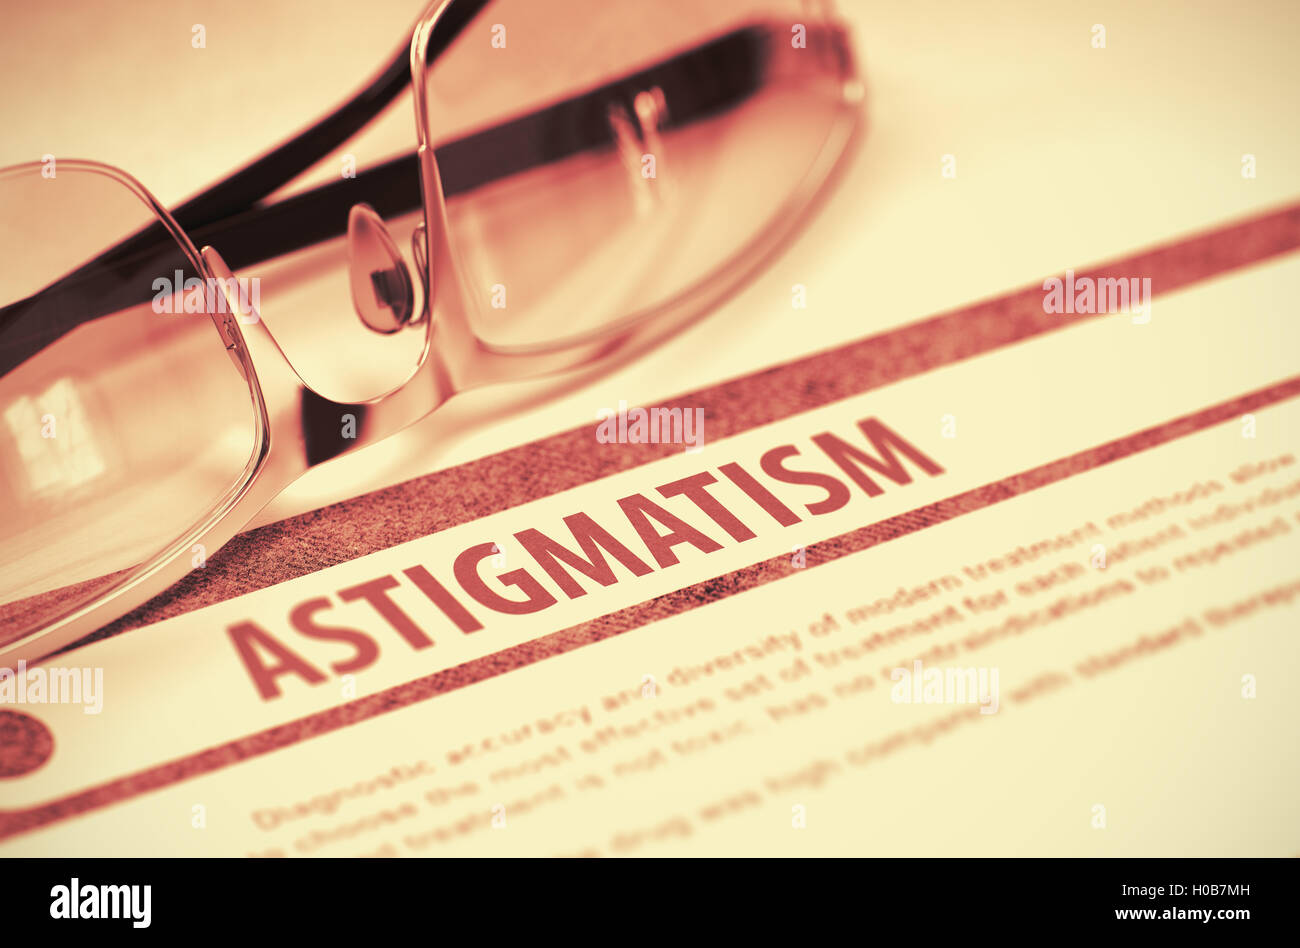 Diagnóstico - el astigmatismo. Concepto de medicina. Ilustración 3D. Foto de stock